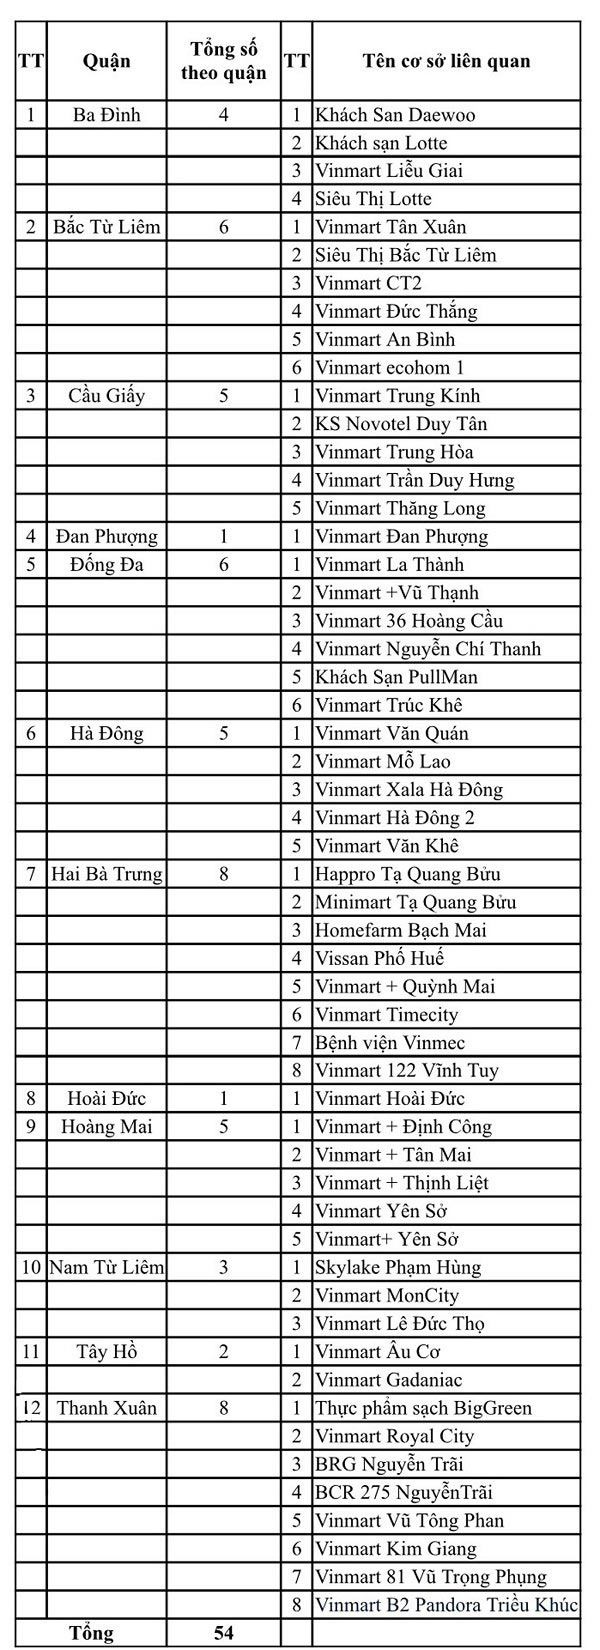 54 siêu thị, bệnh viện, khách sạn tại Hà Nội liên quan đến Công ty thực phẩm Thanh Nga